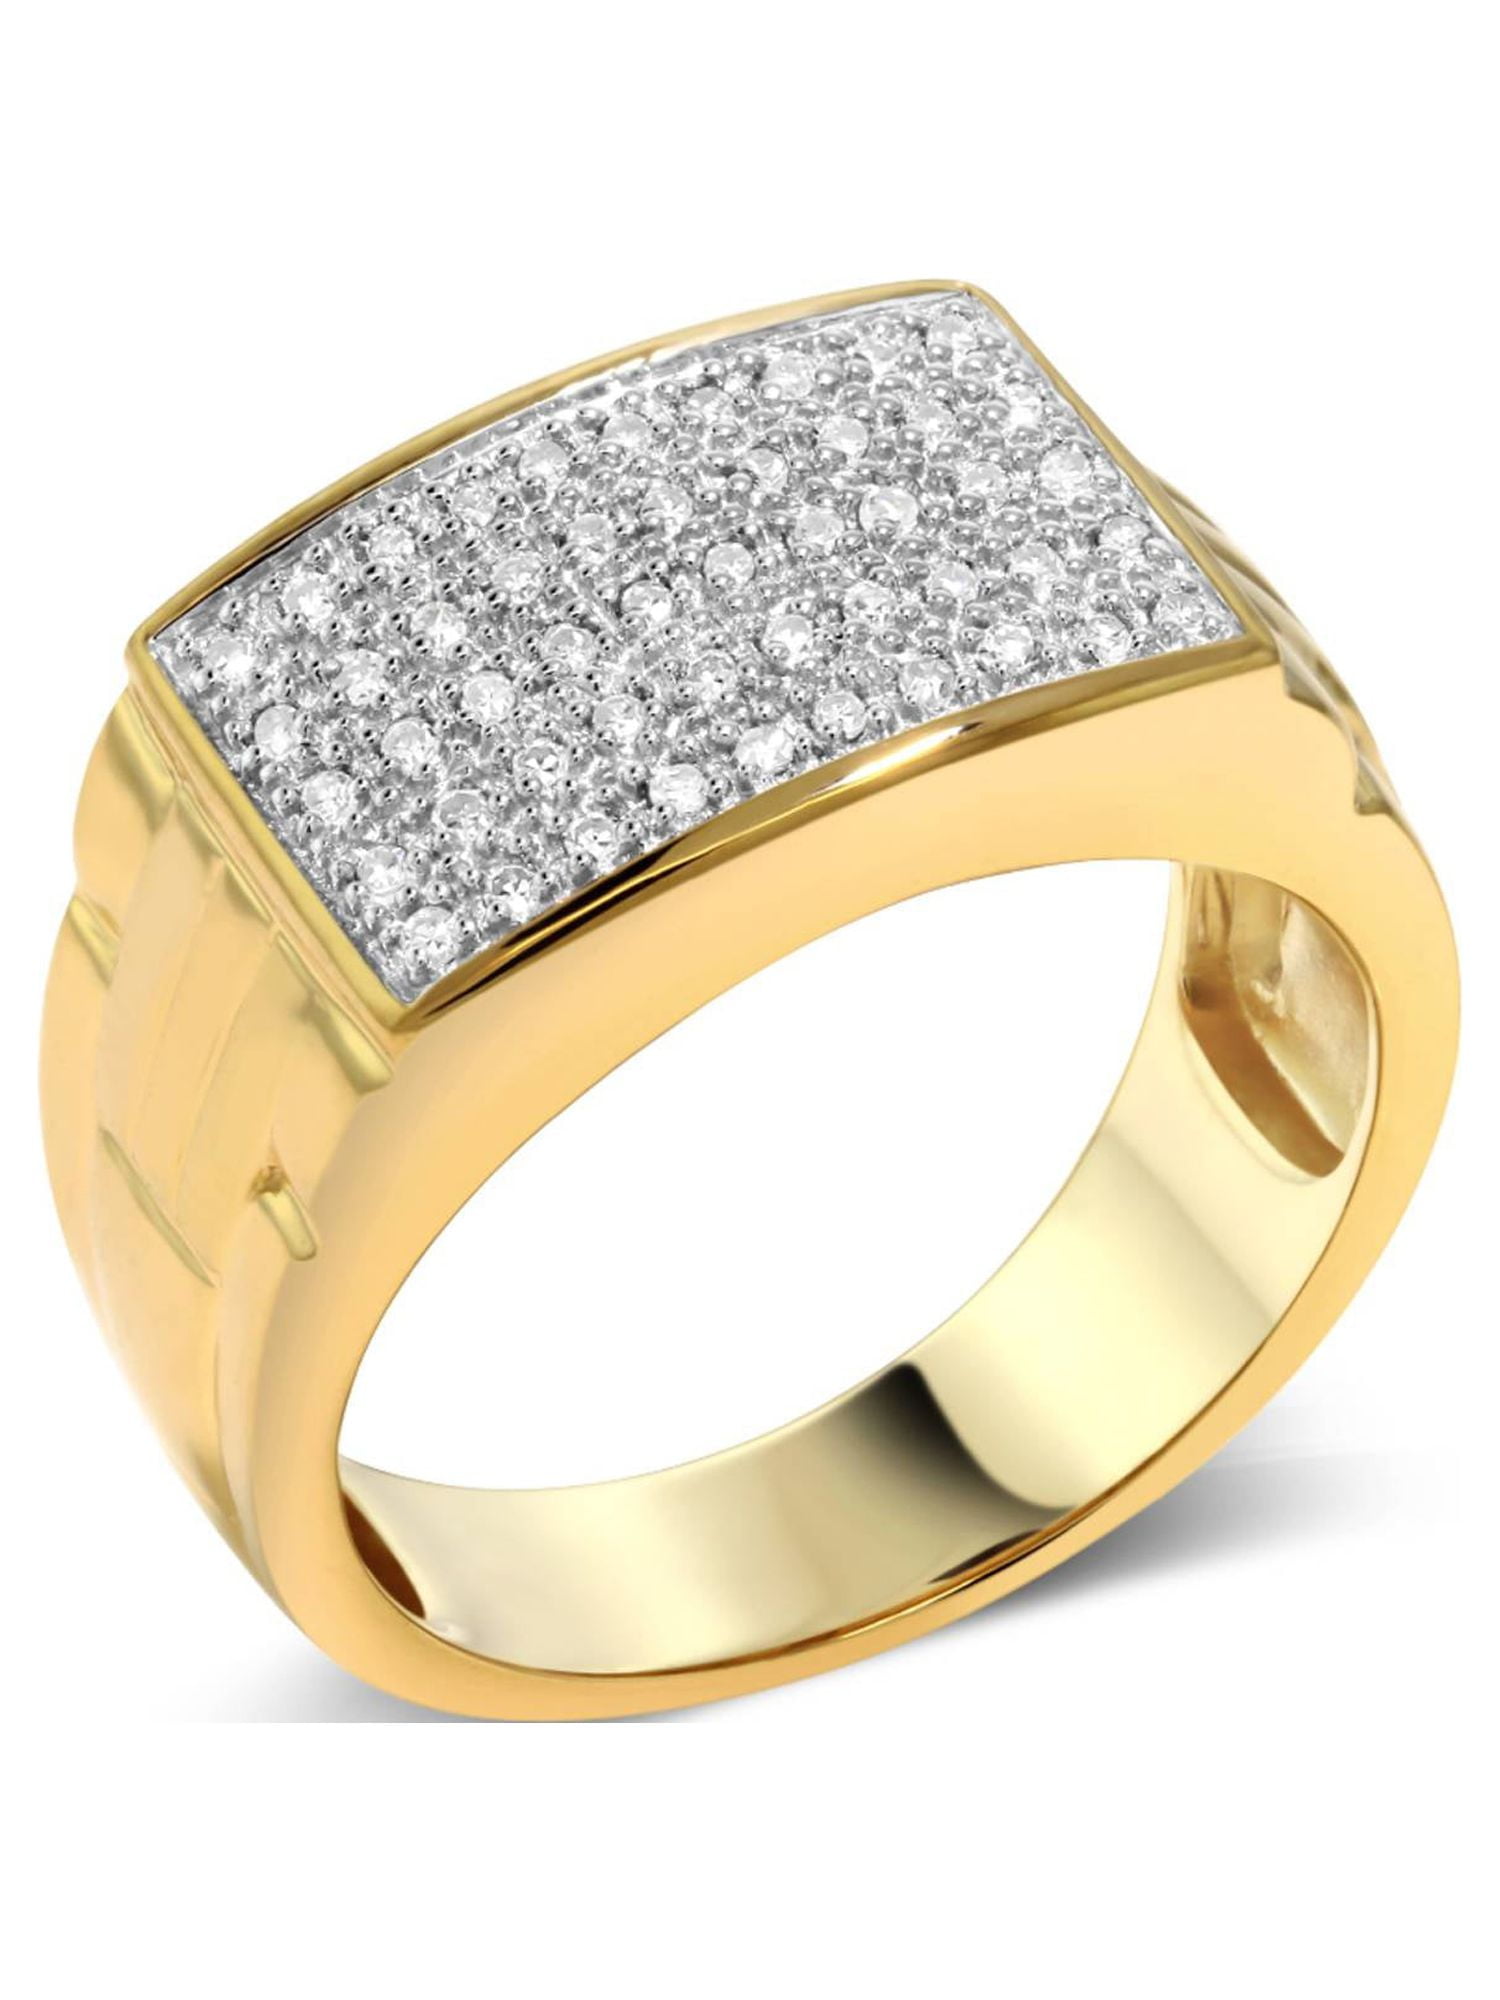 Luxury White Stone Ladies Ring | G.Rajam Chetty And Sons Jewellers